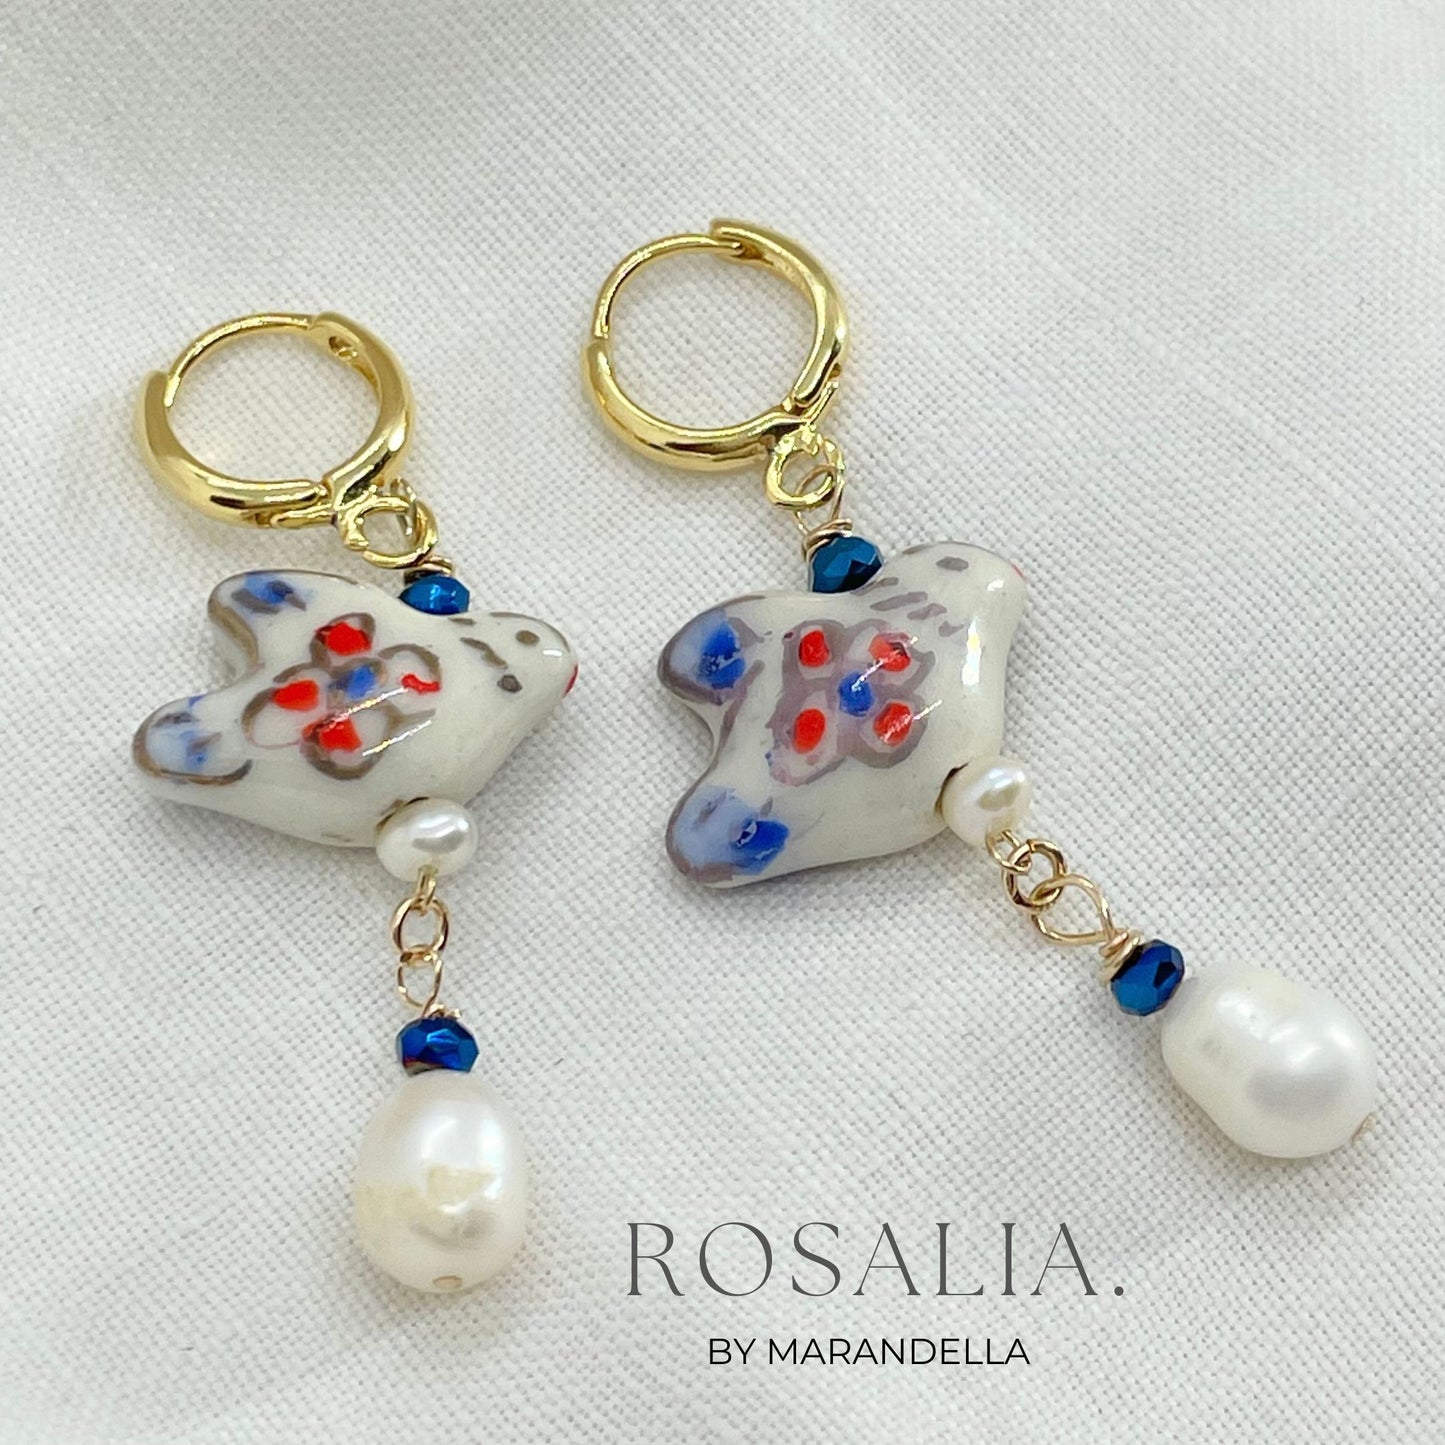 Rosalia Earrings